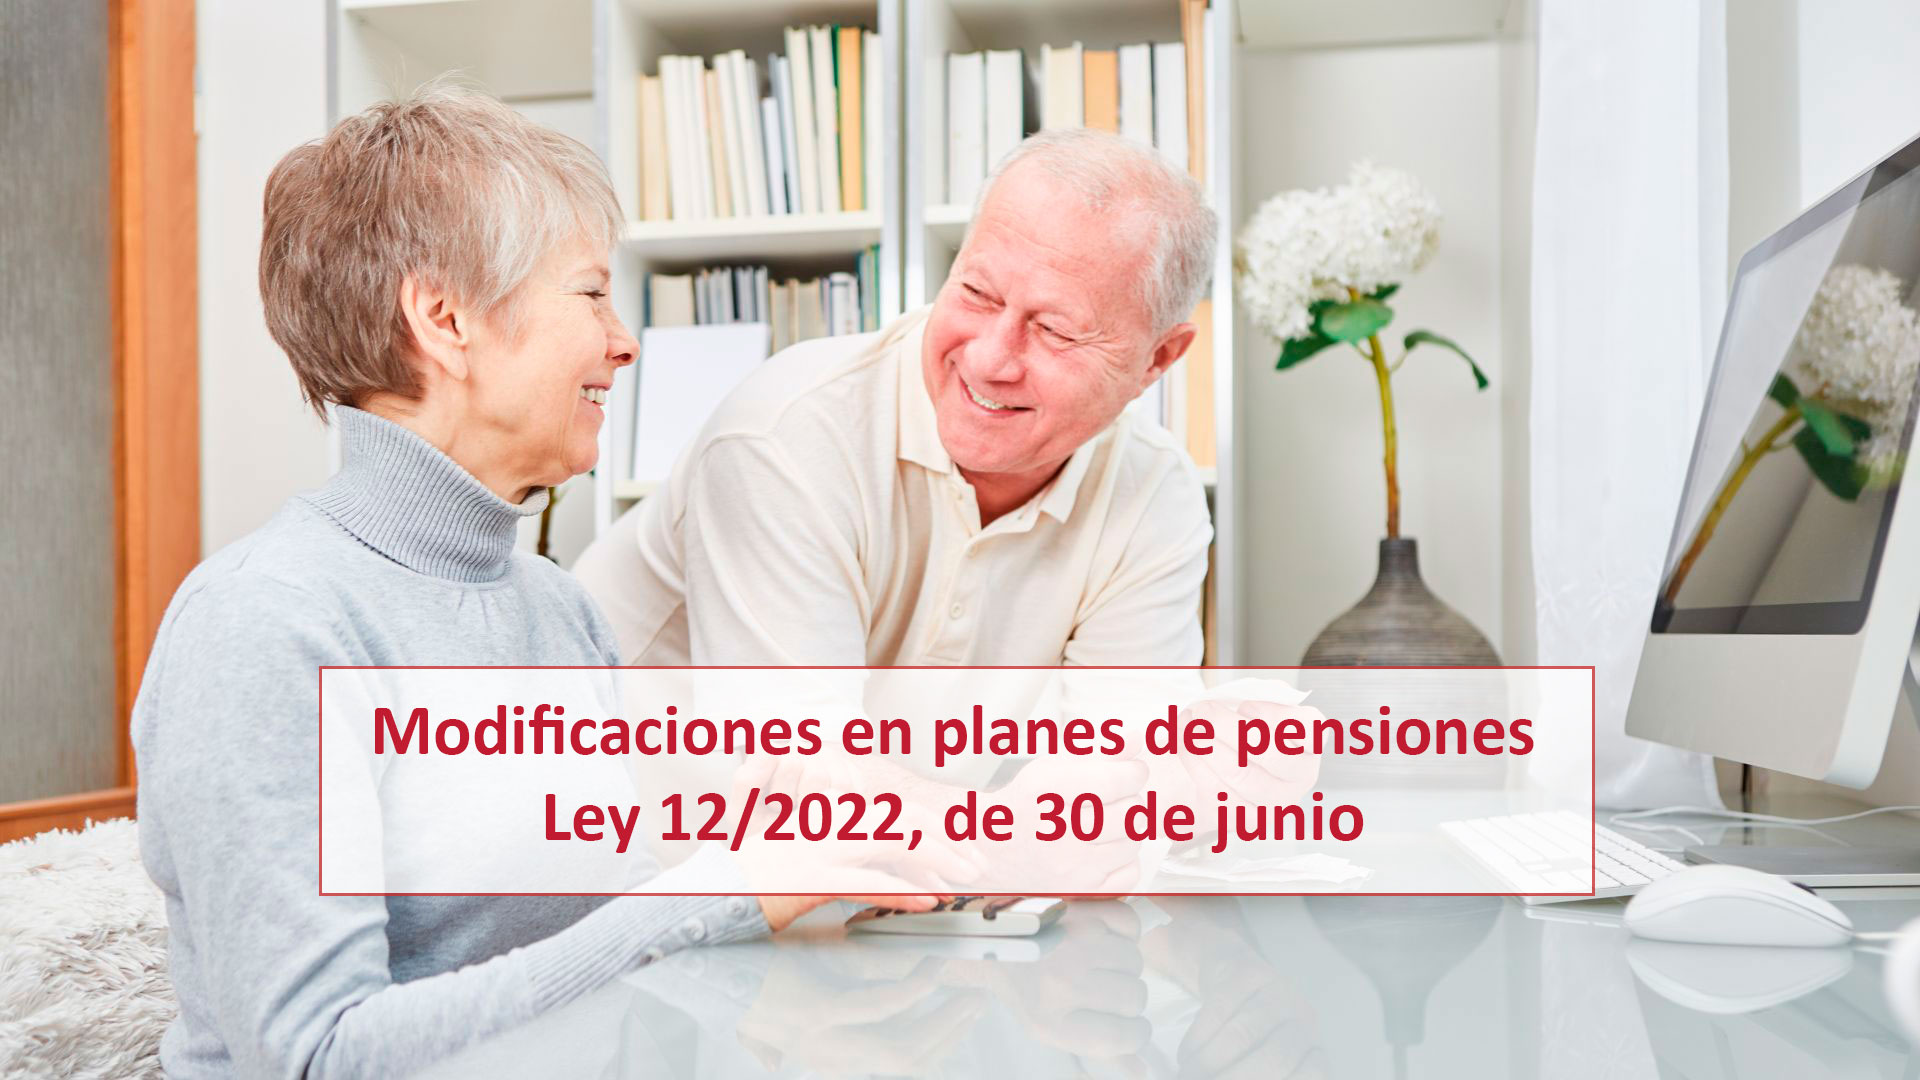 Modificaciones en planes de pensiones: Ley 12/2022, de 30 de junio